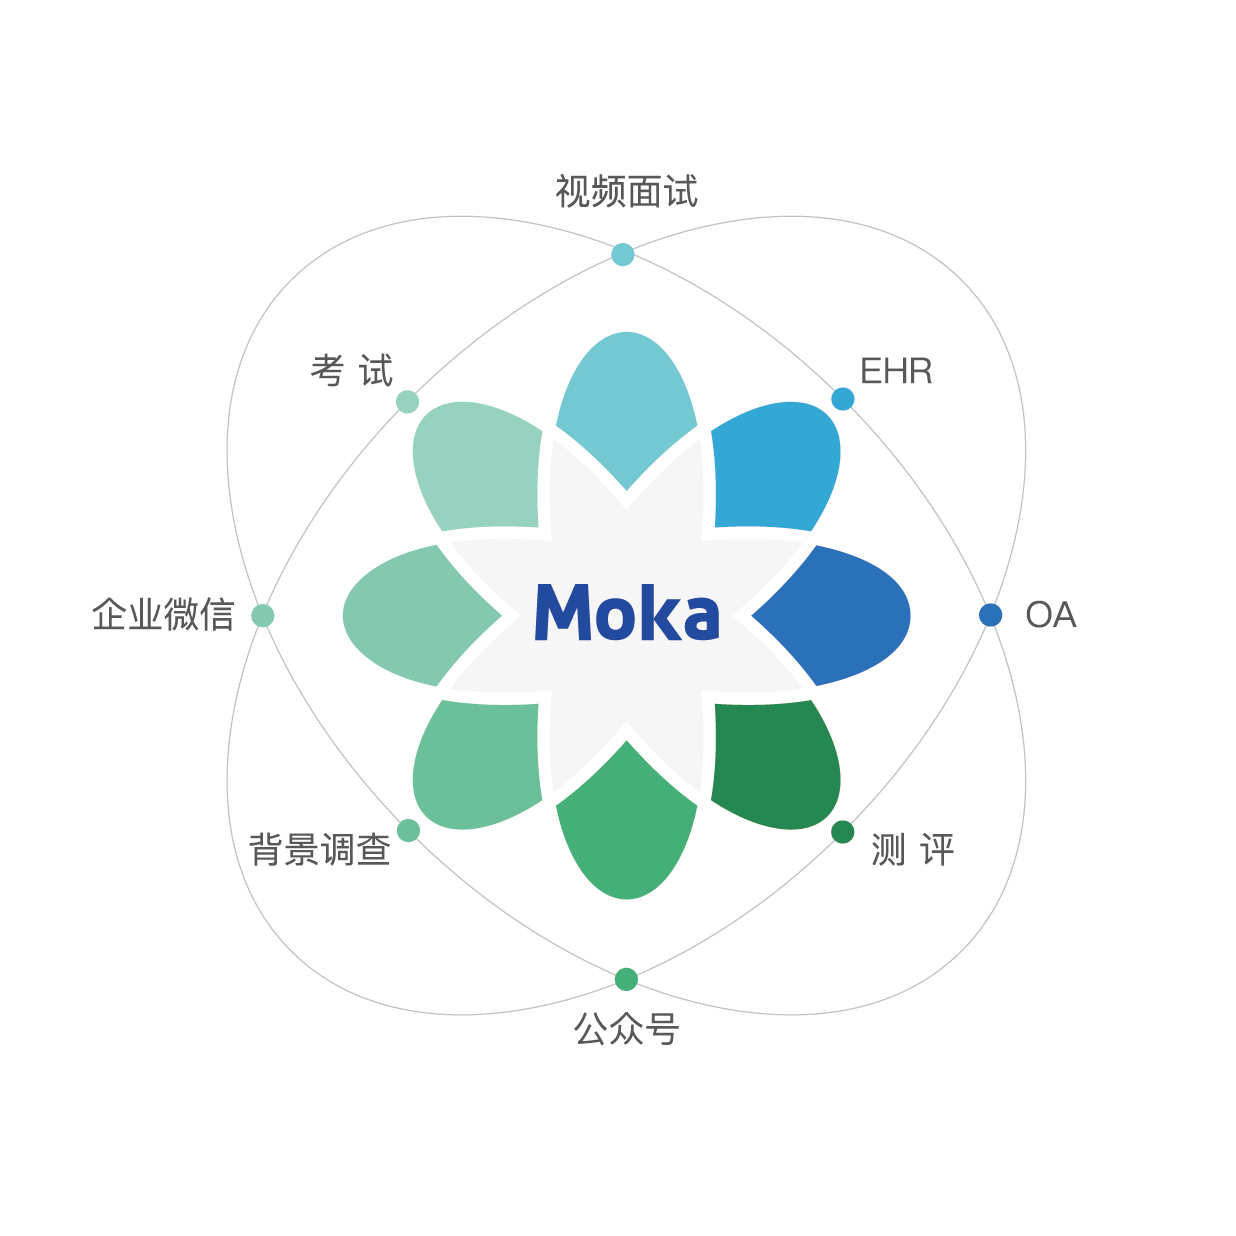 一家新能源汽车企业的秋招实录-Moka智能化招聘系统